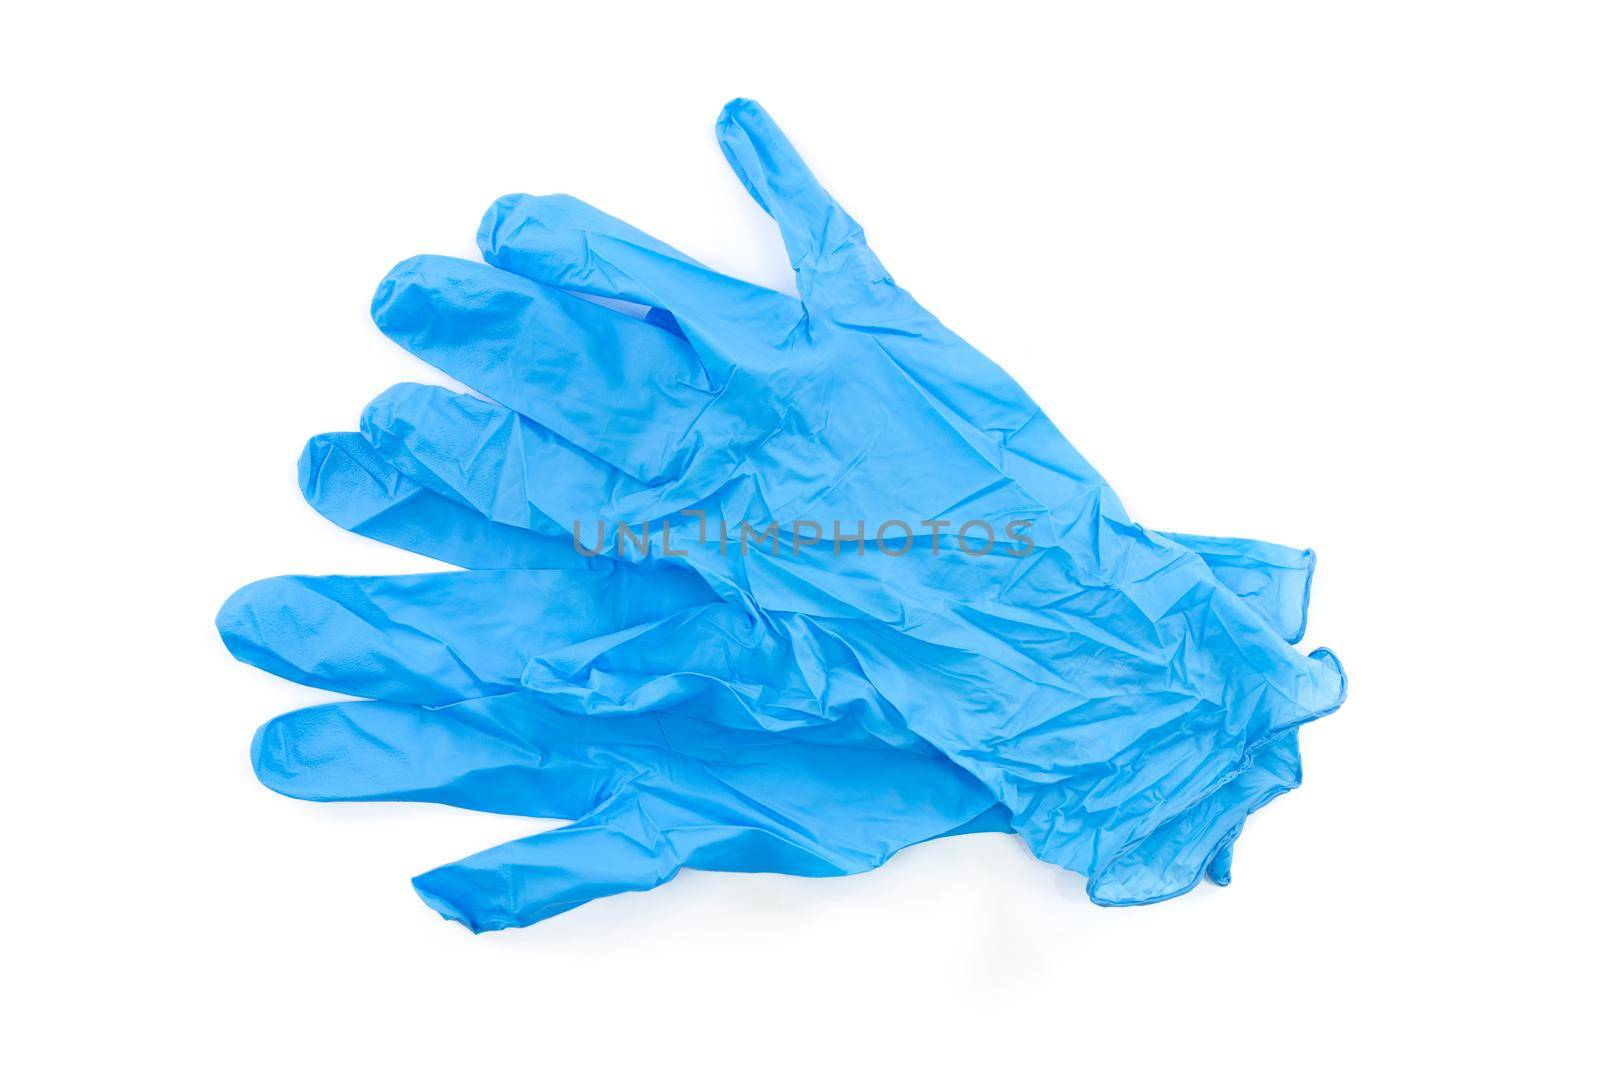 Blue lab gloves by wdnet_studio